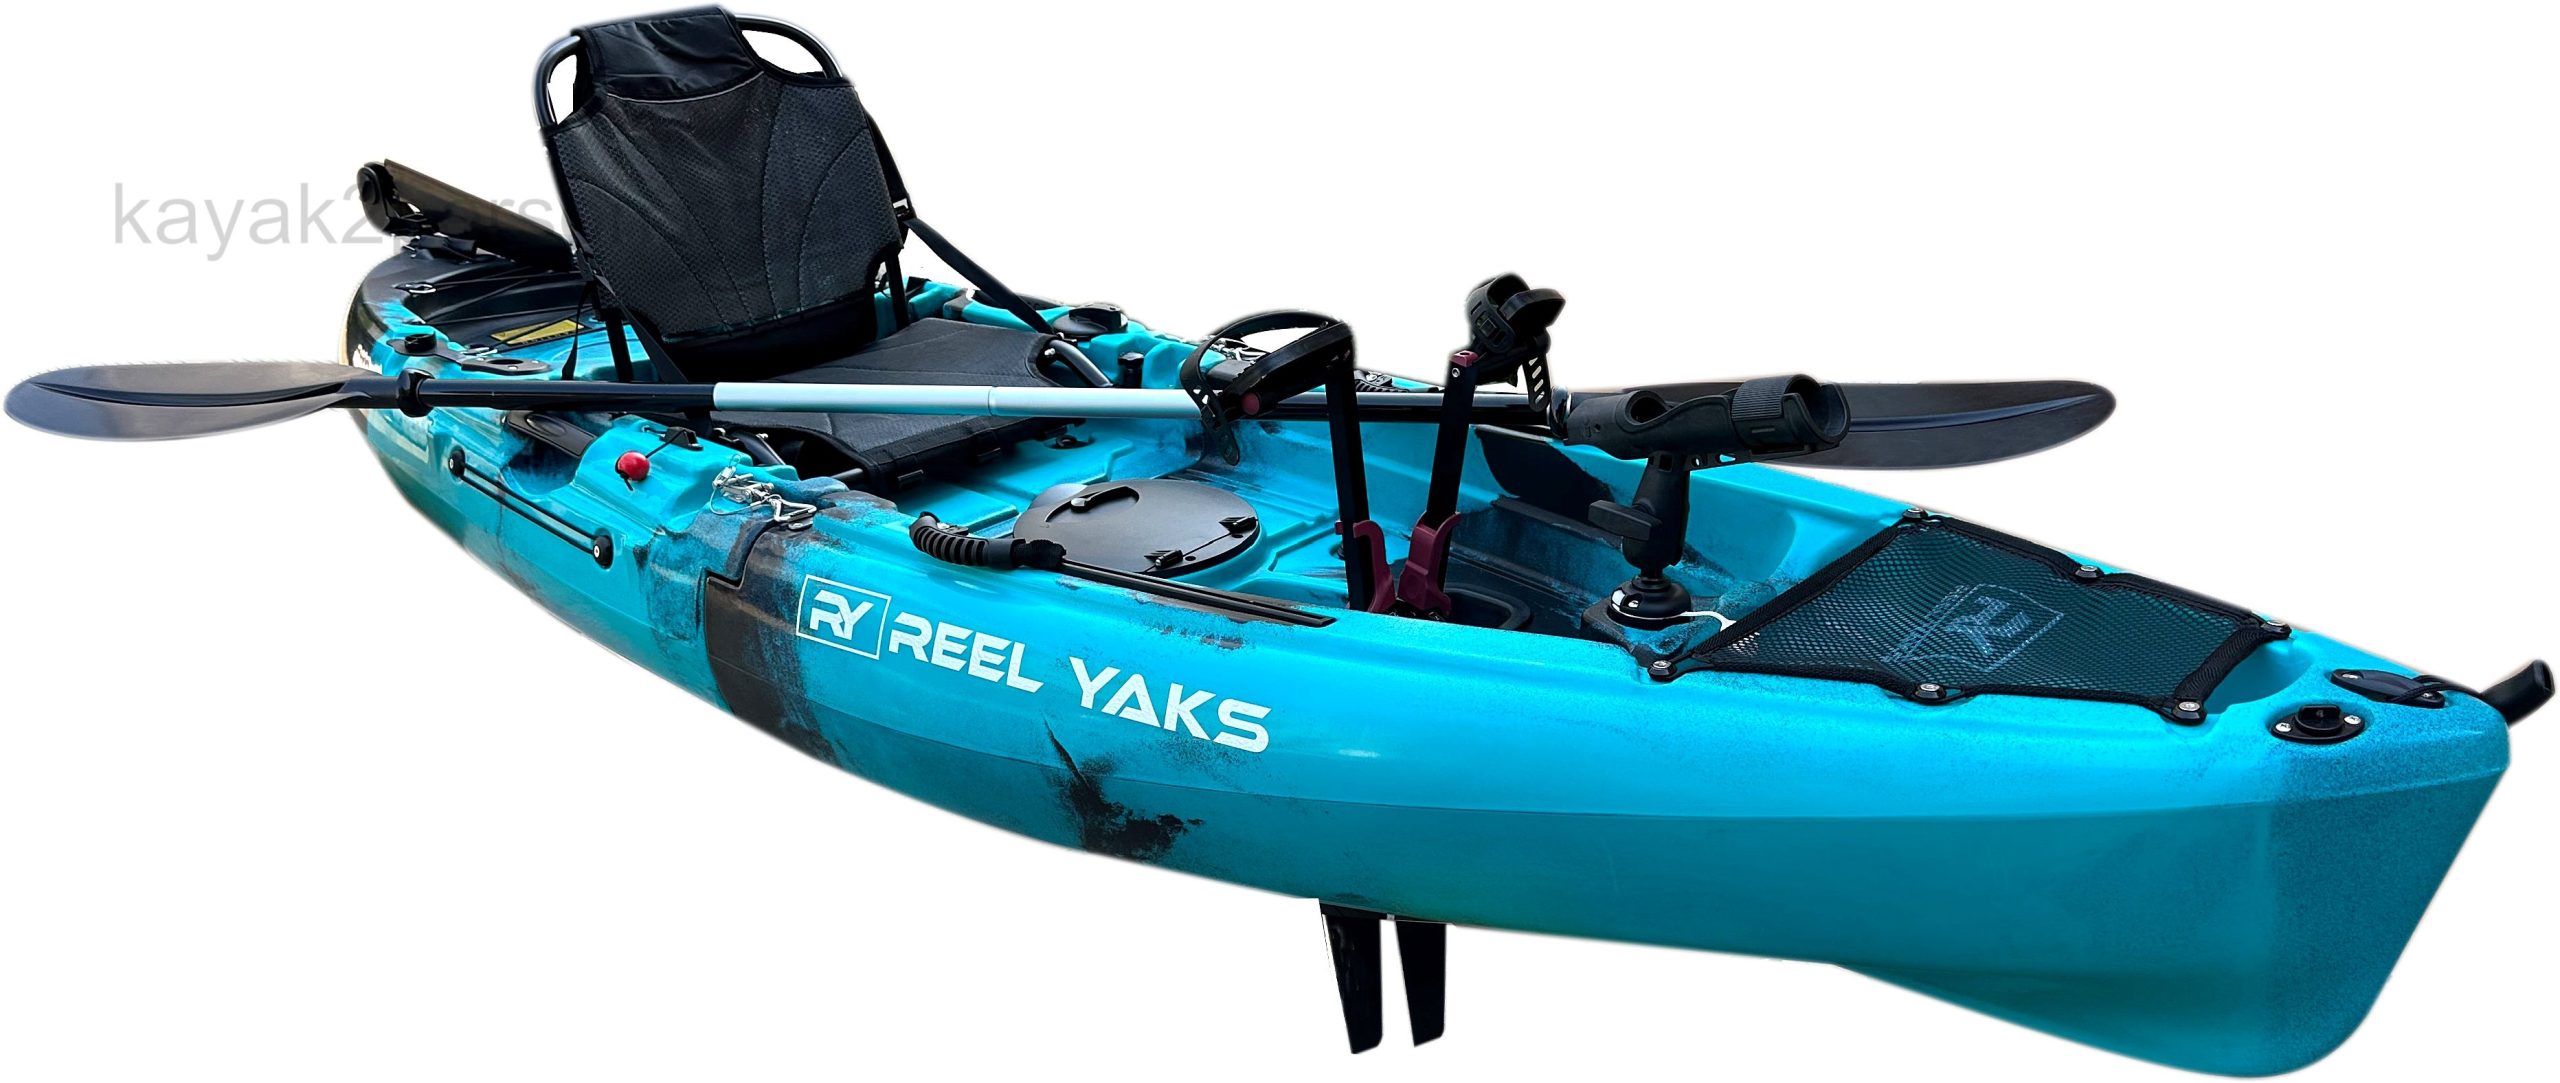 Super Cheap 9.5ft Modular Raptor Pedal Fishing Kayak | Super Lightweight,  400lbs C